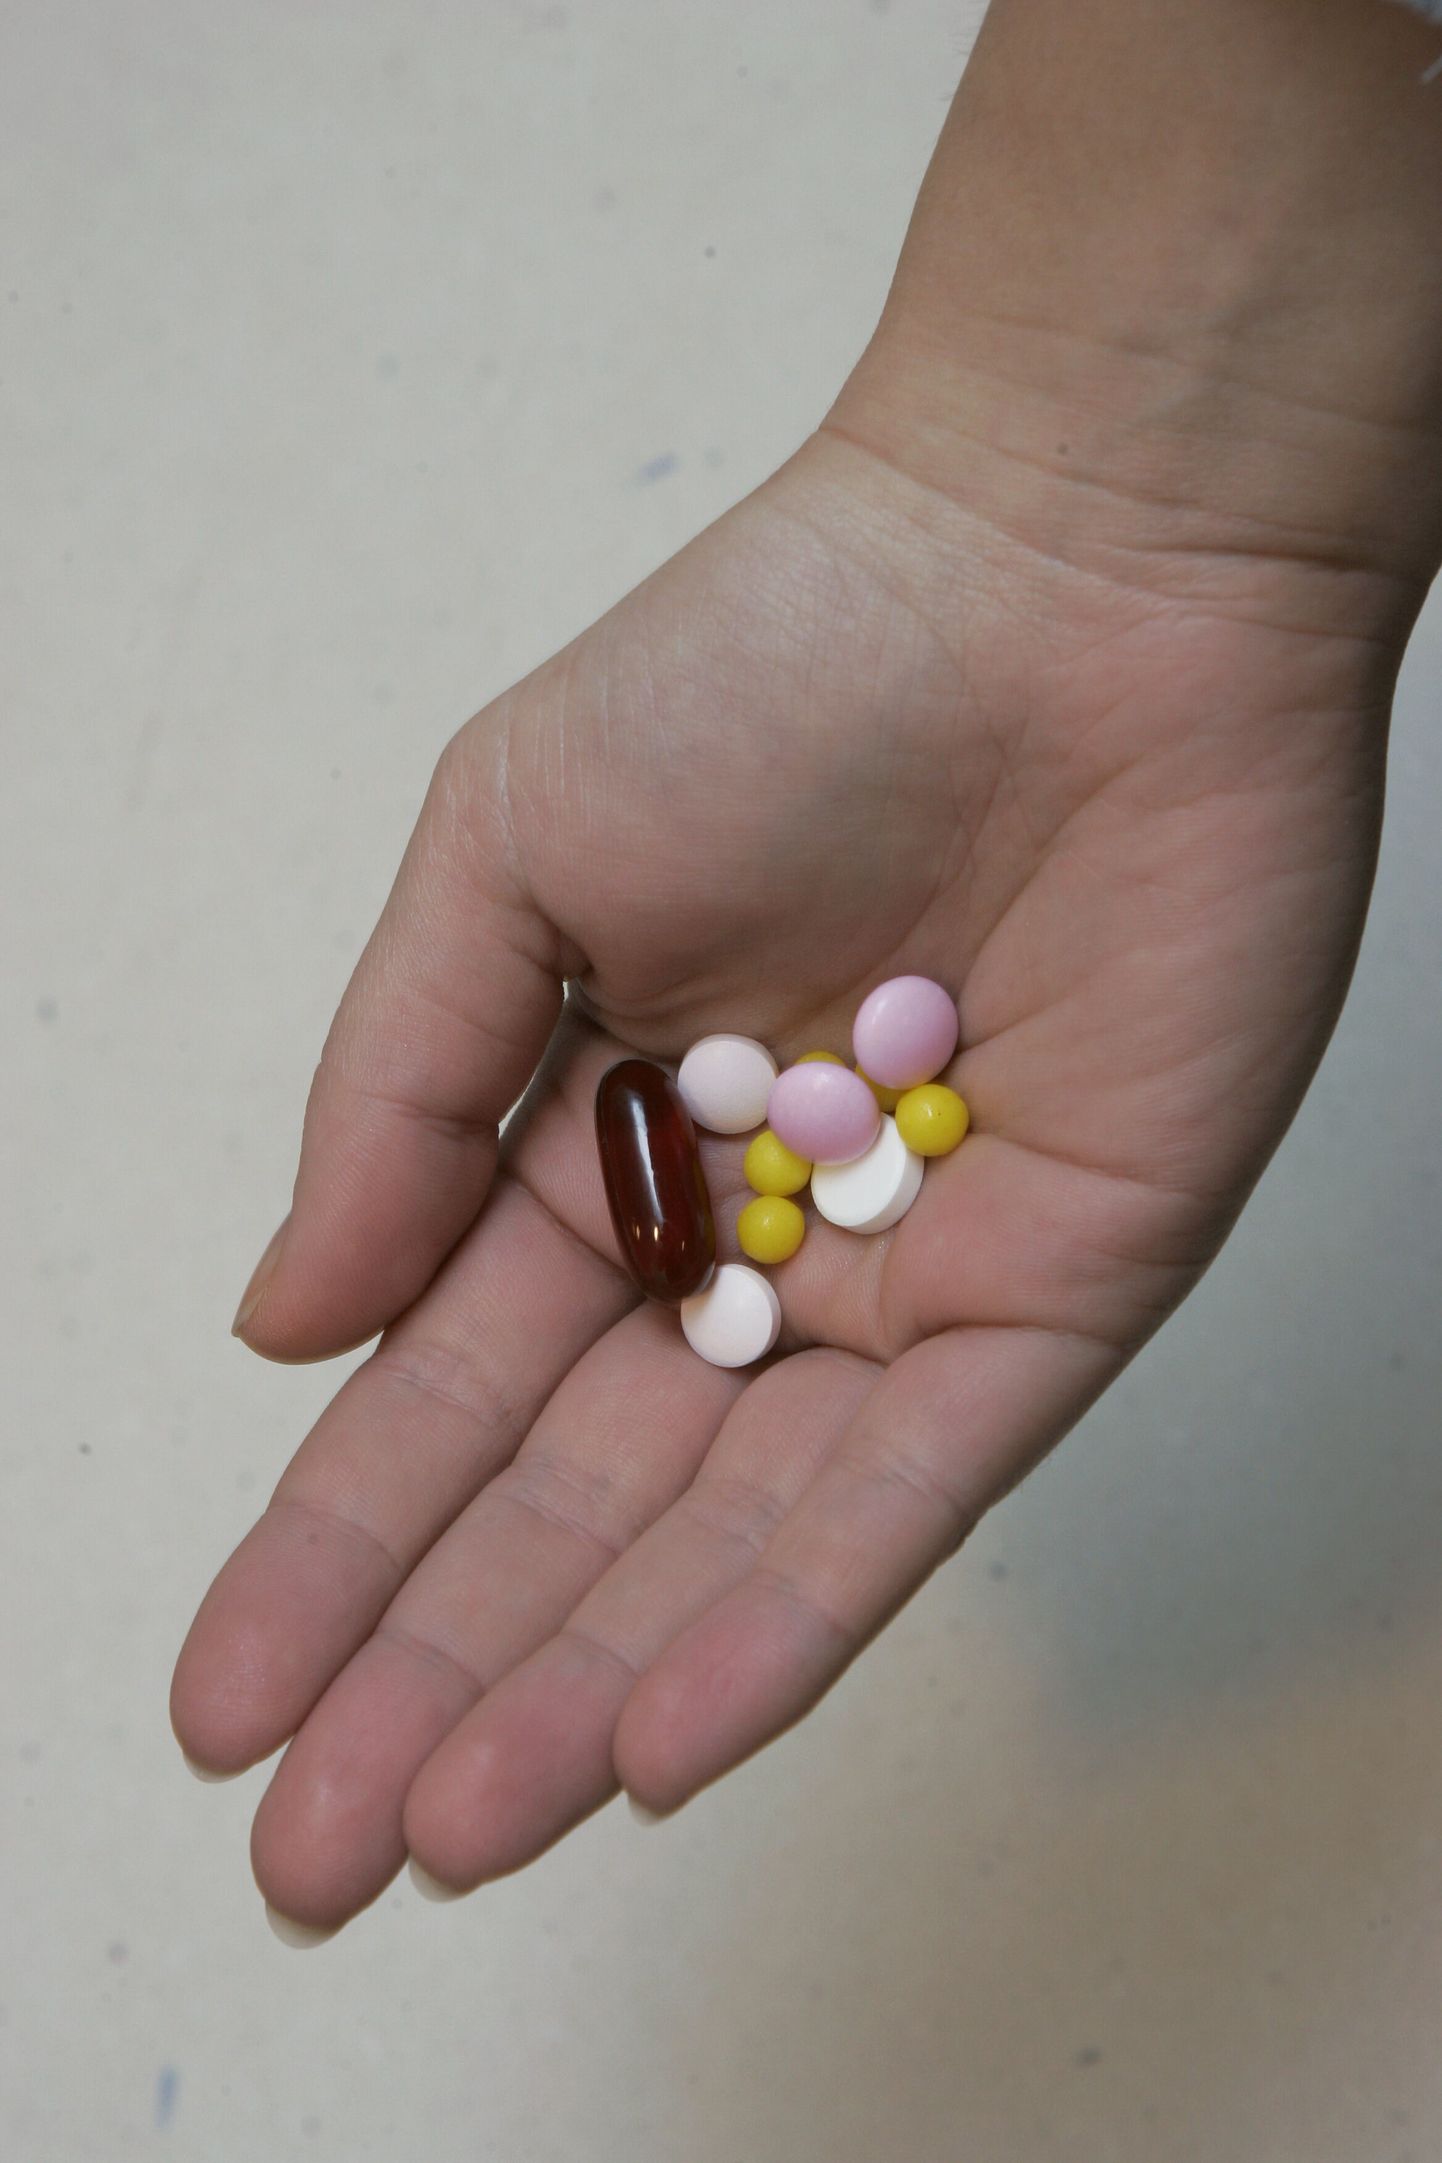 Foolhapet ja B12-vitamiini manustavatel patsientidel esines 25 protsenti suurem vähi tekke risk.